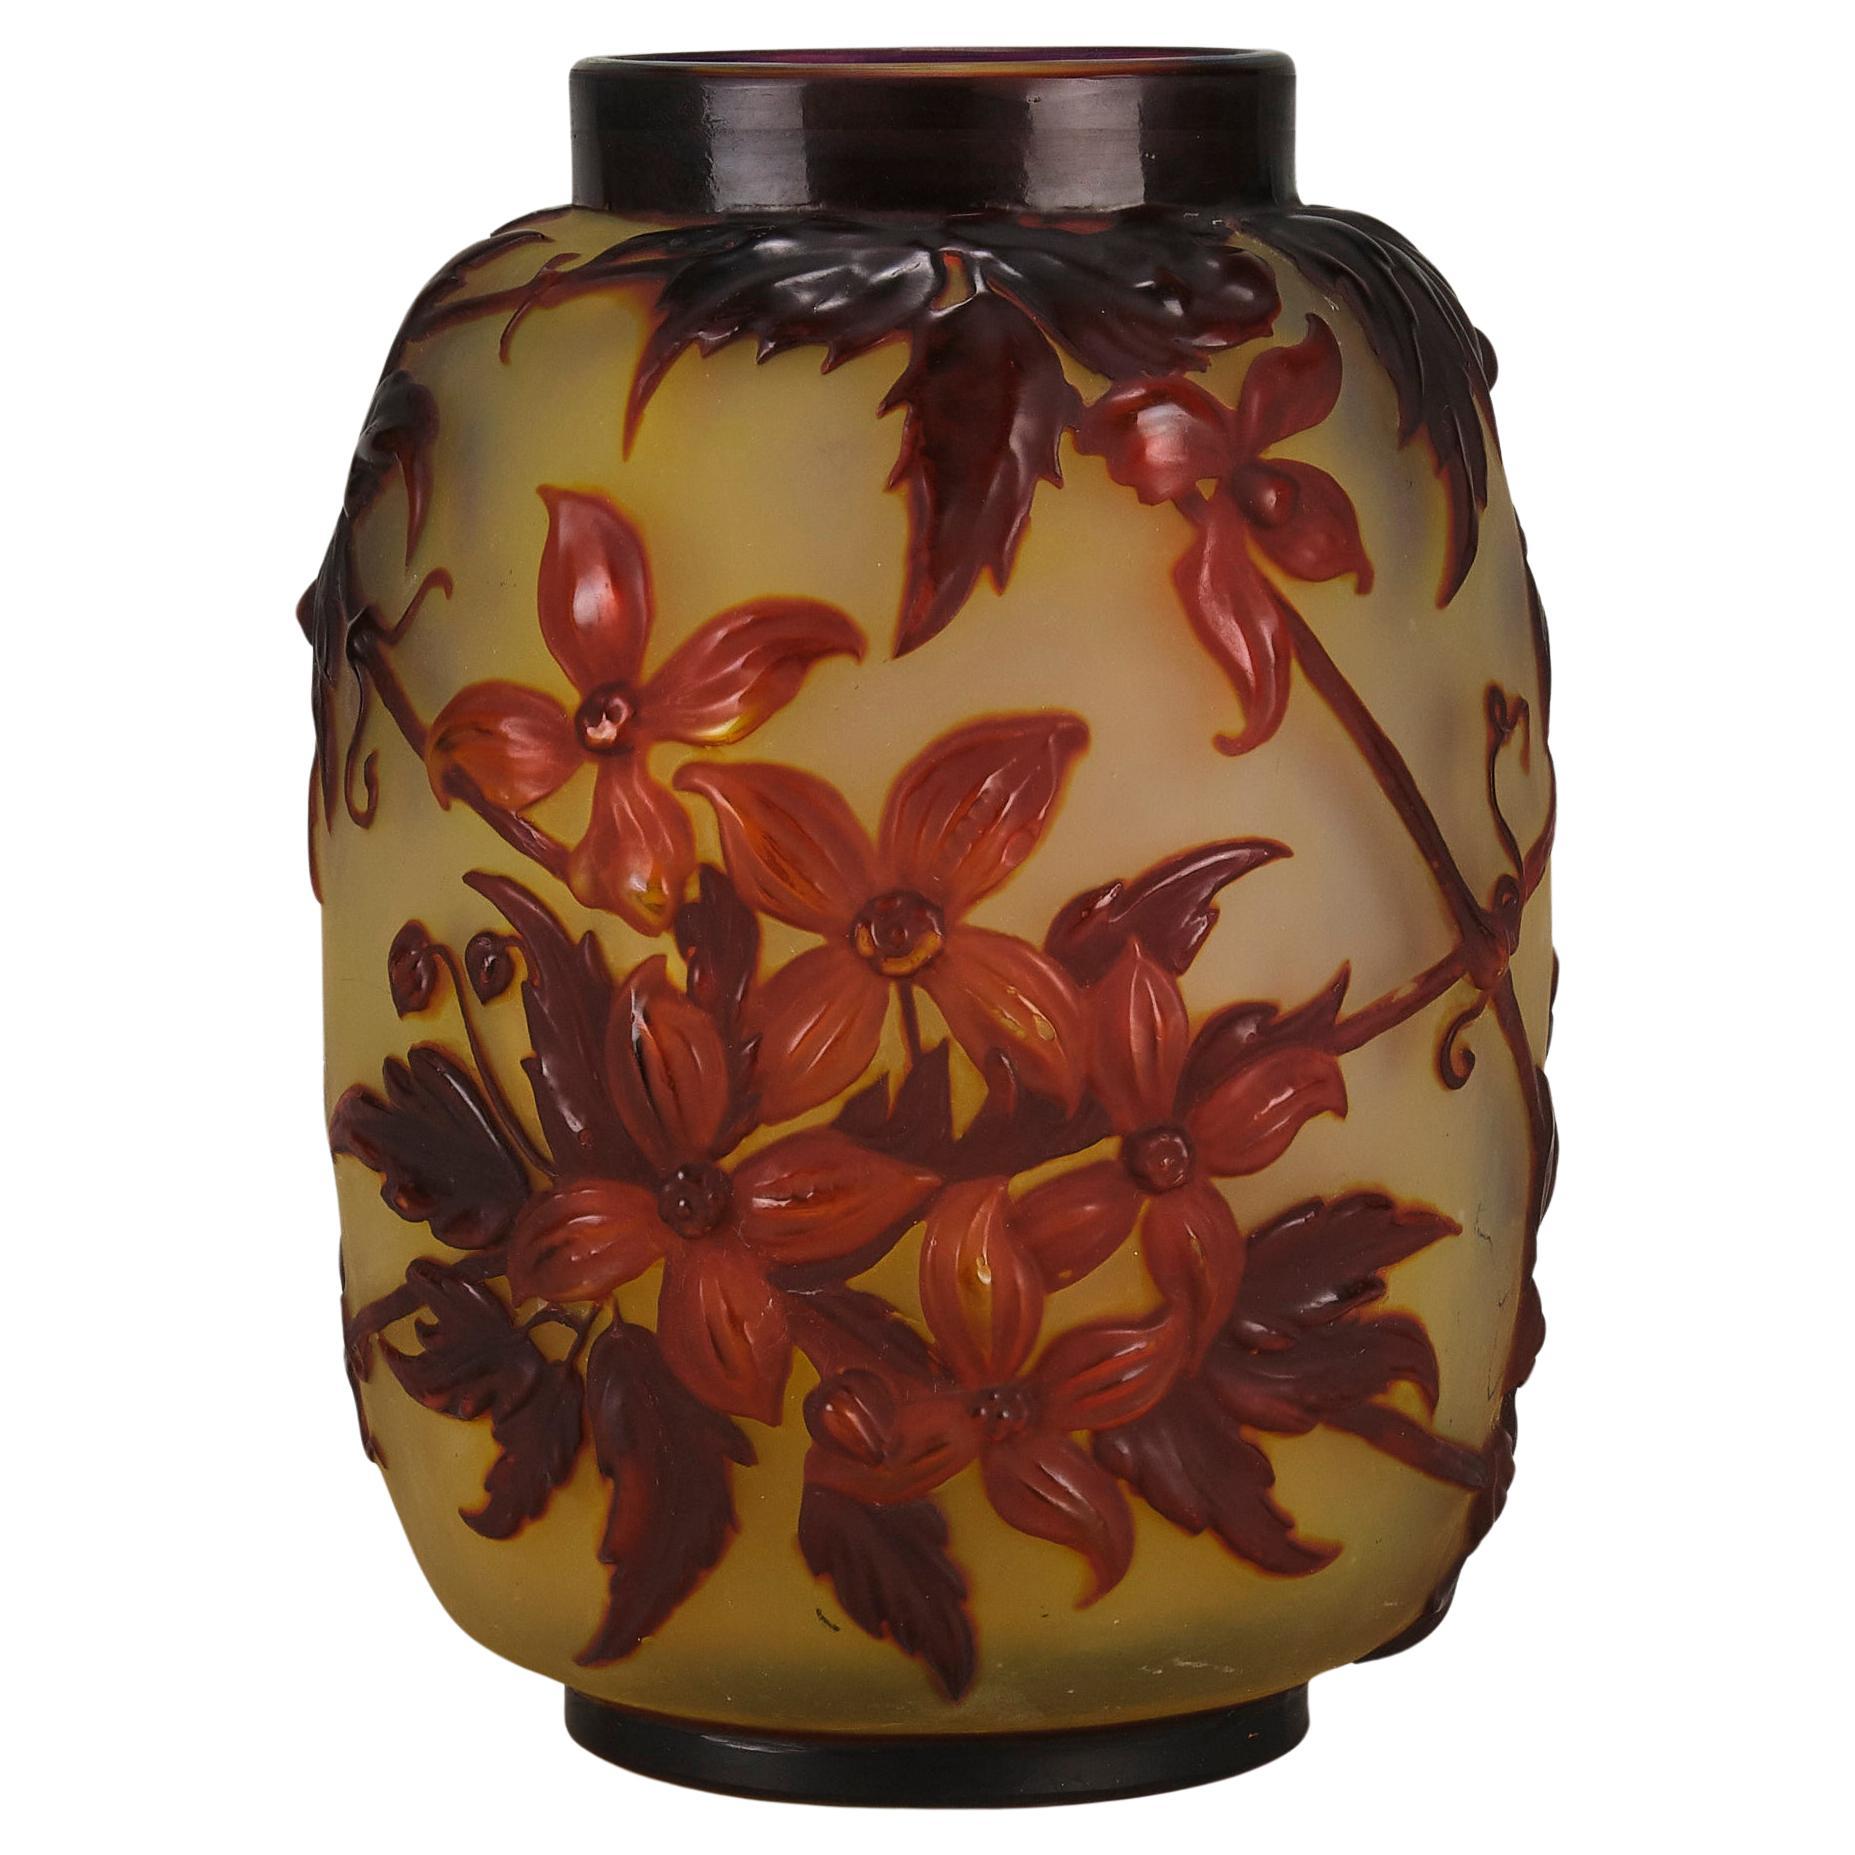 Rare Early 20th Century Art Nouveau Vase "Clematis Soufflé Vase" by Emile Galle For Sale